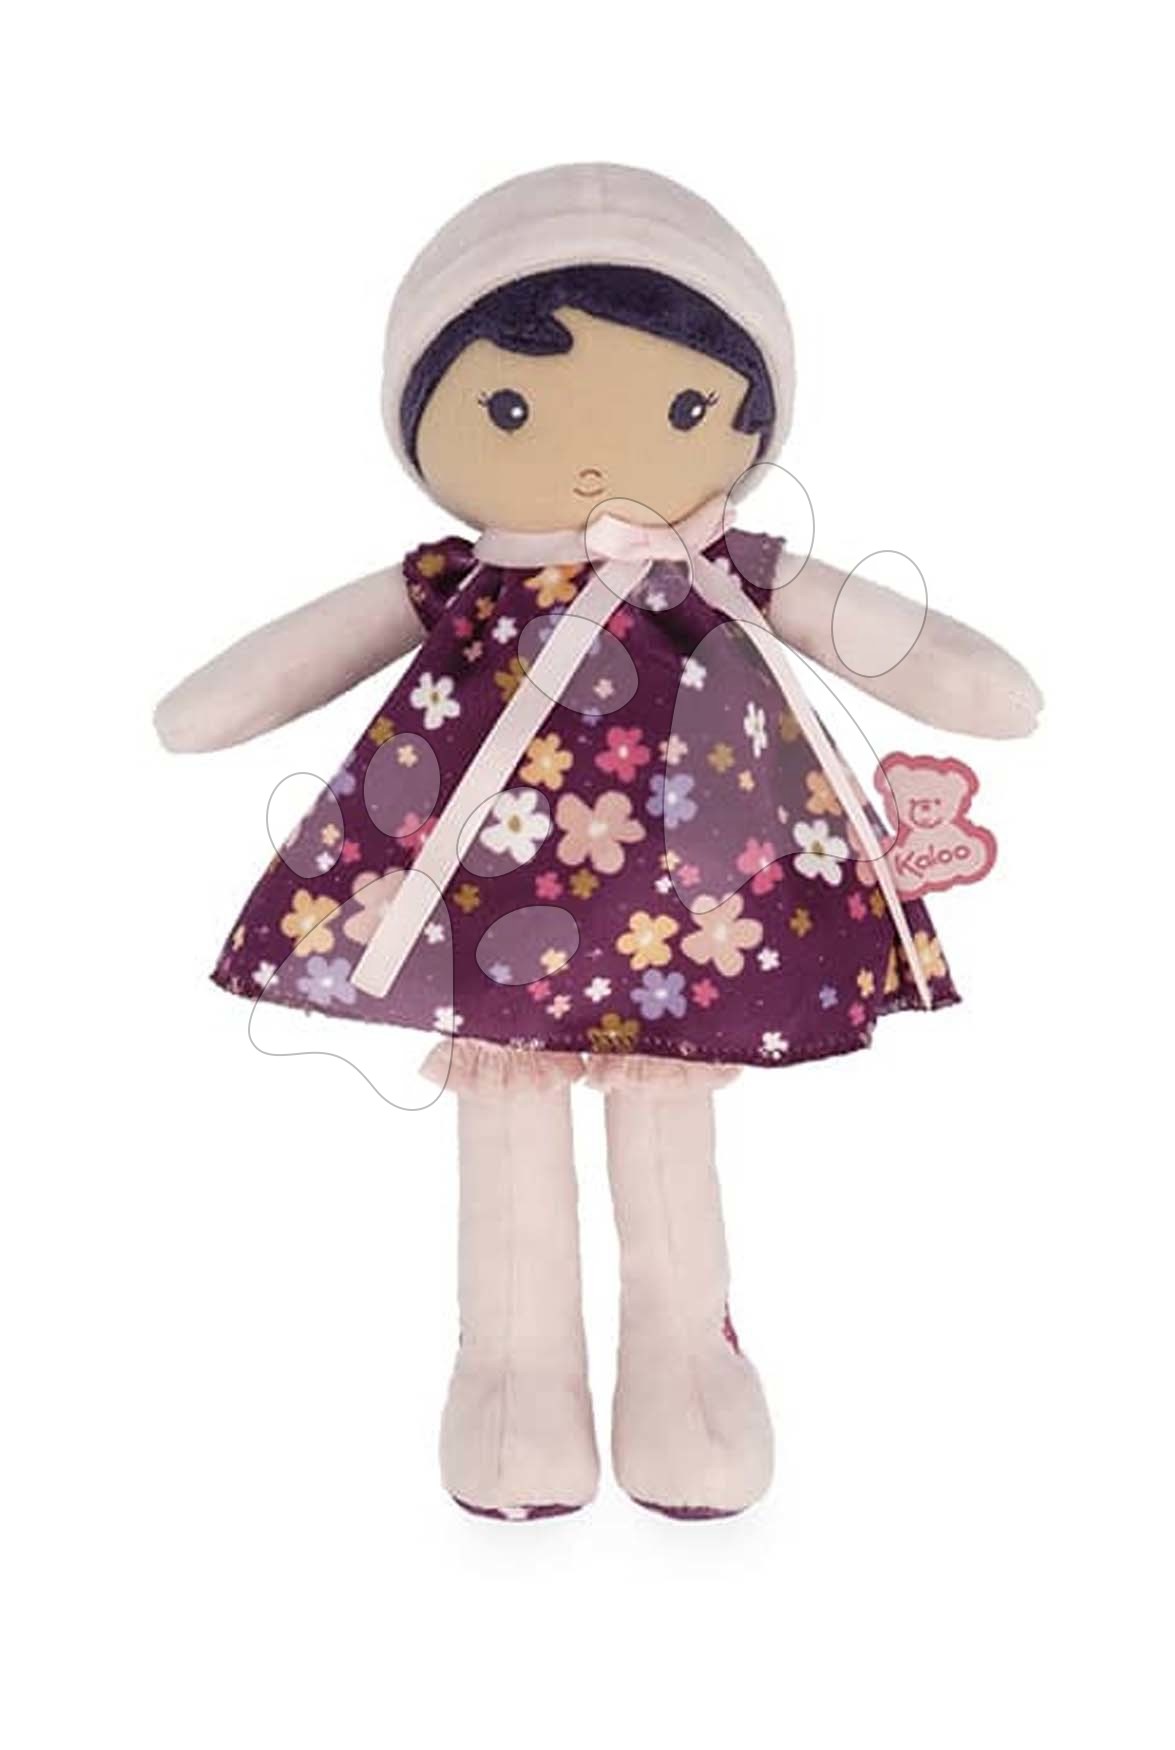 Rongybaba kisbabáknak Violette Doll Tendresse Kaloo 25 cm lila ruhácskában puha textilből 0 hó-tól